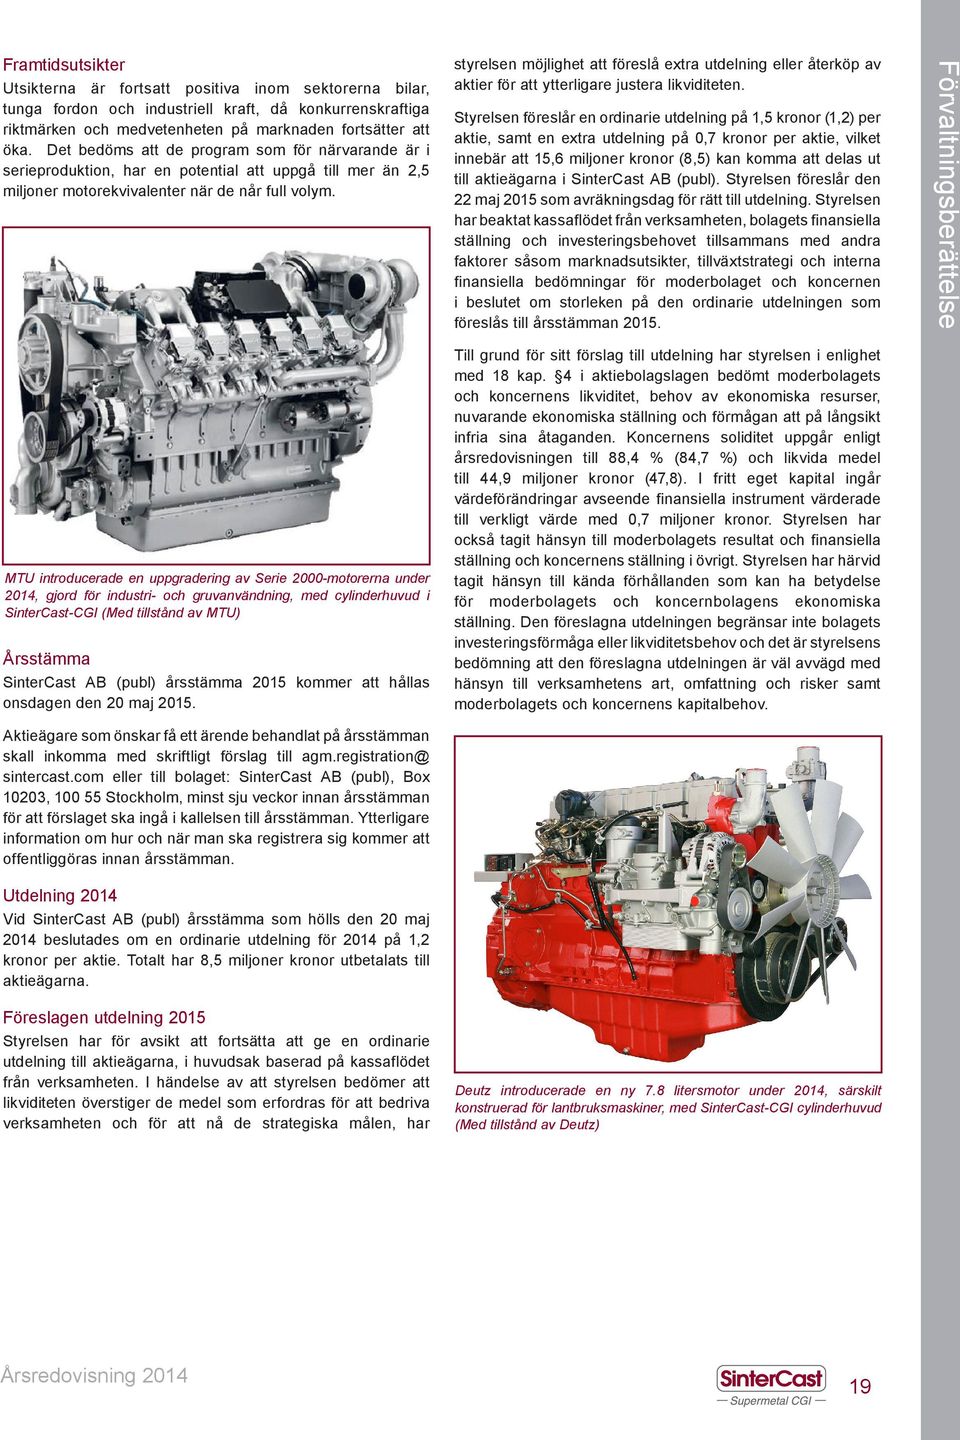 MTU introducerade en uppgradering av Serie 2000-motorerna under 2014, gjord för industri- och gruvanvändning, med cylinderhuvud i SinterCast-CGI (Med tillstånd av MTU) Årsstämma SinterCast AB (publ)